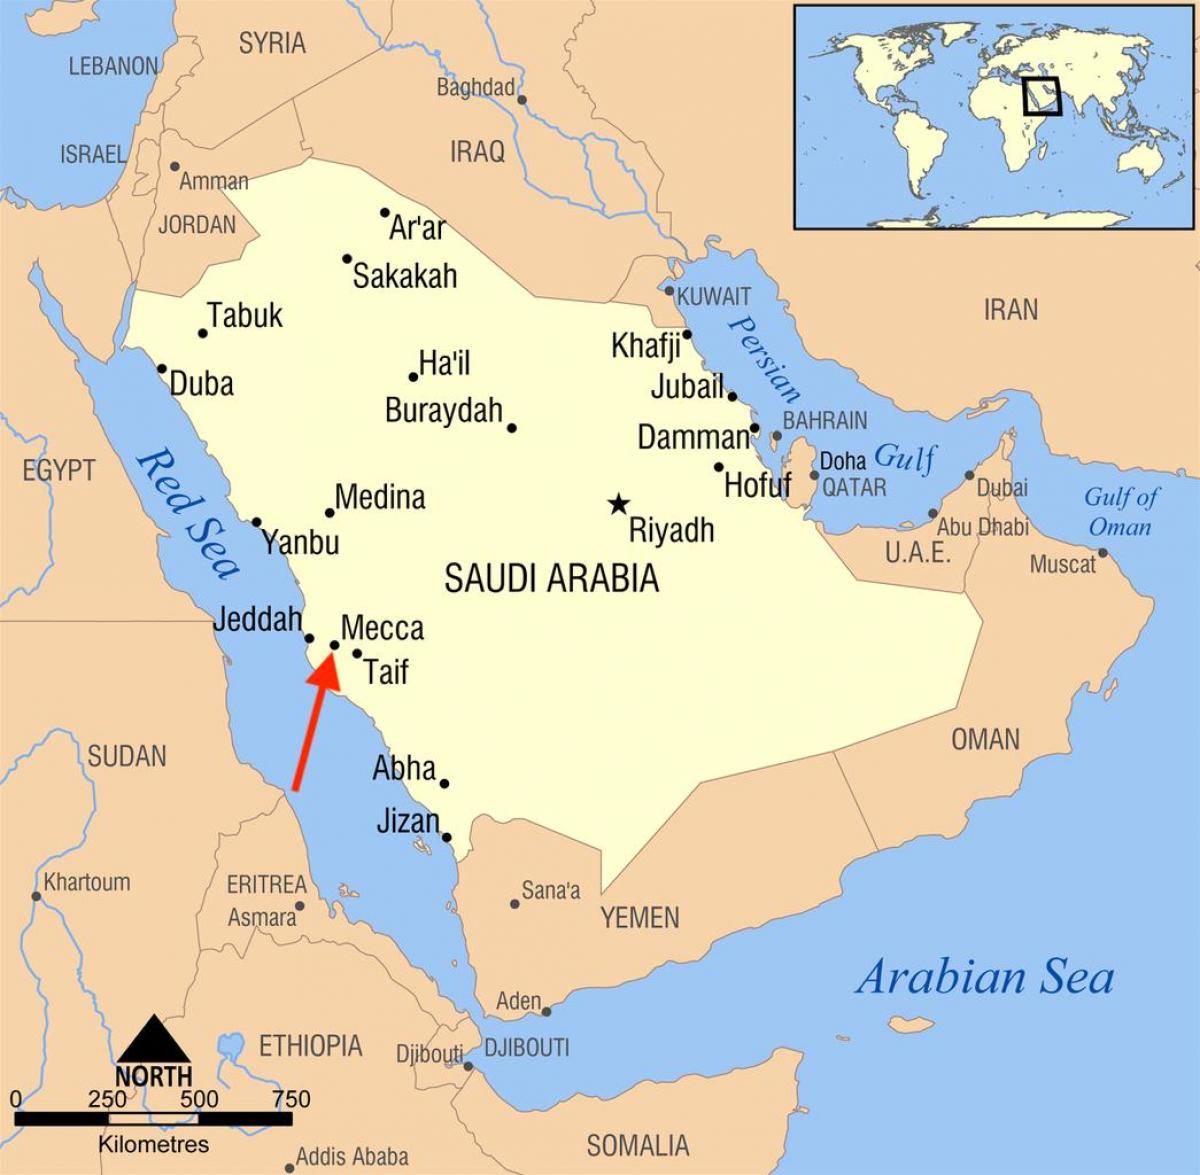 Ville de Mecca (Makkah) sur la carte de Saudi Arabia